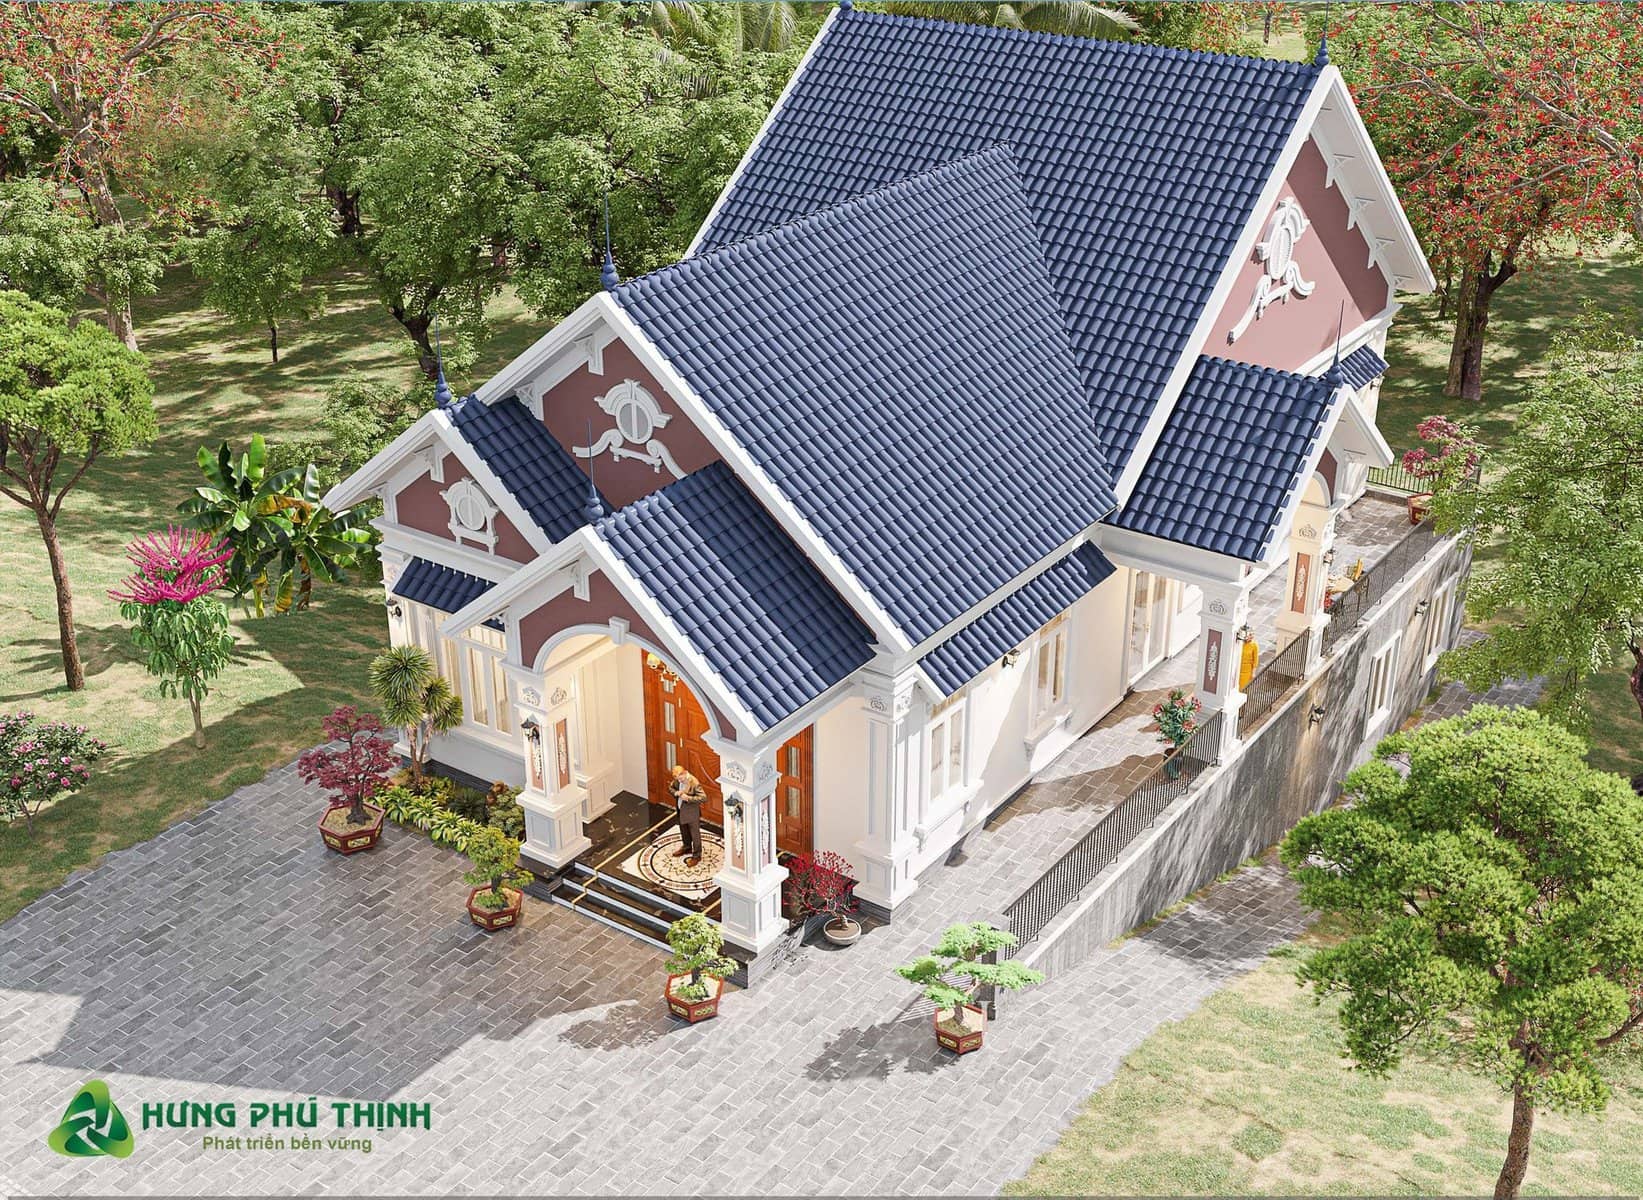 Hình ảnh nhà hoàn thiện tại Hưng Phú Thịnh